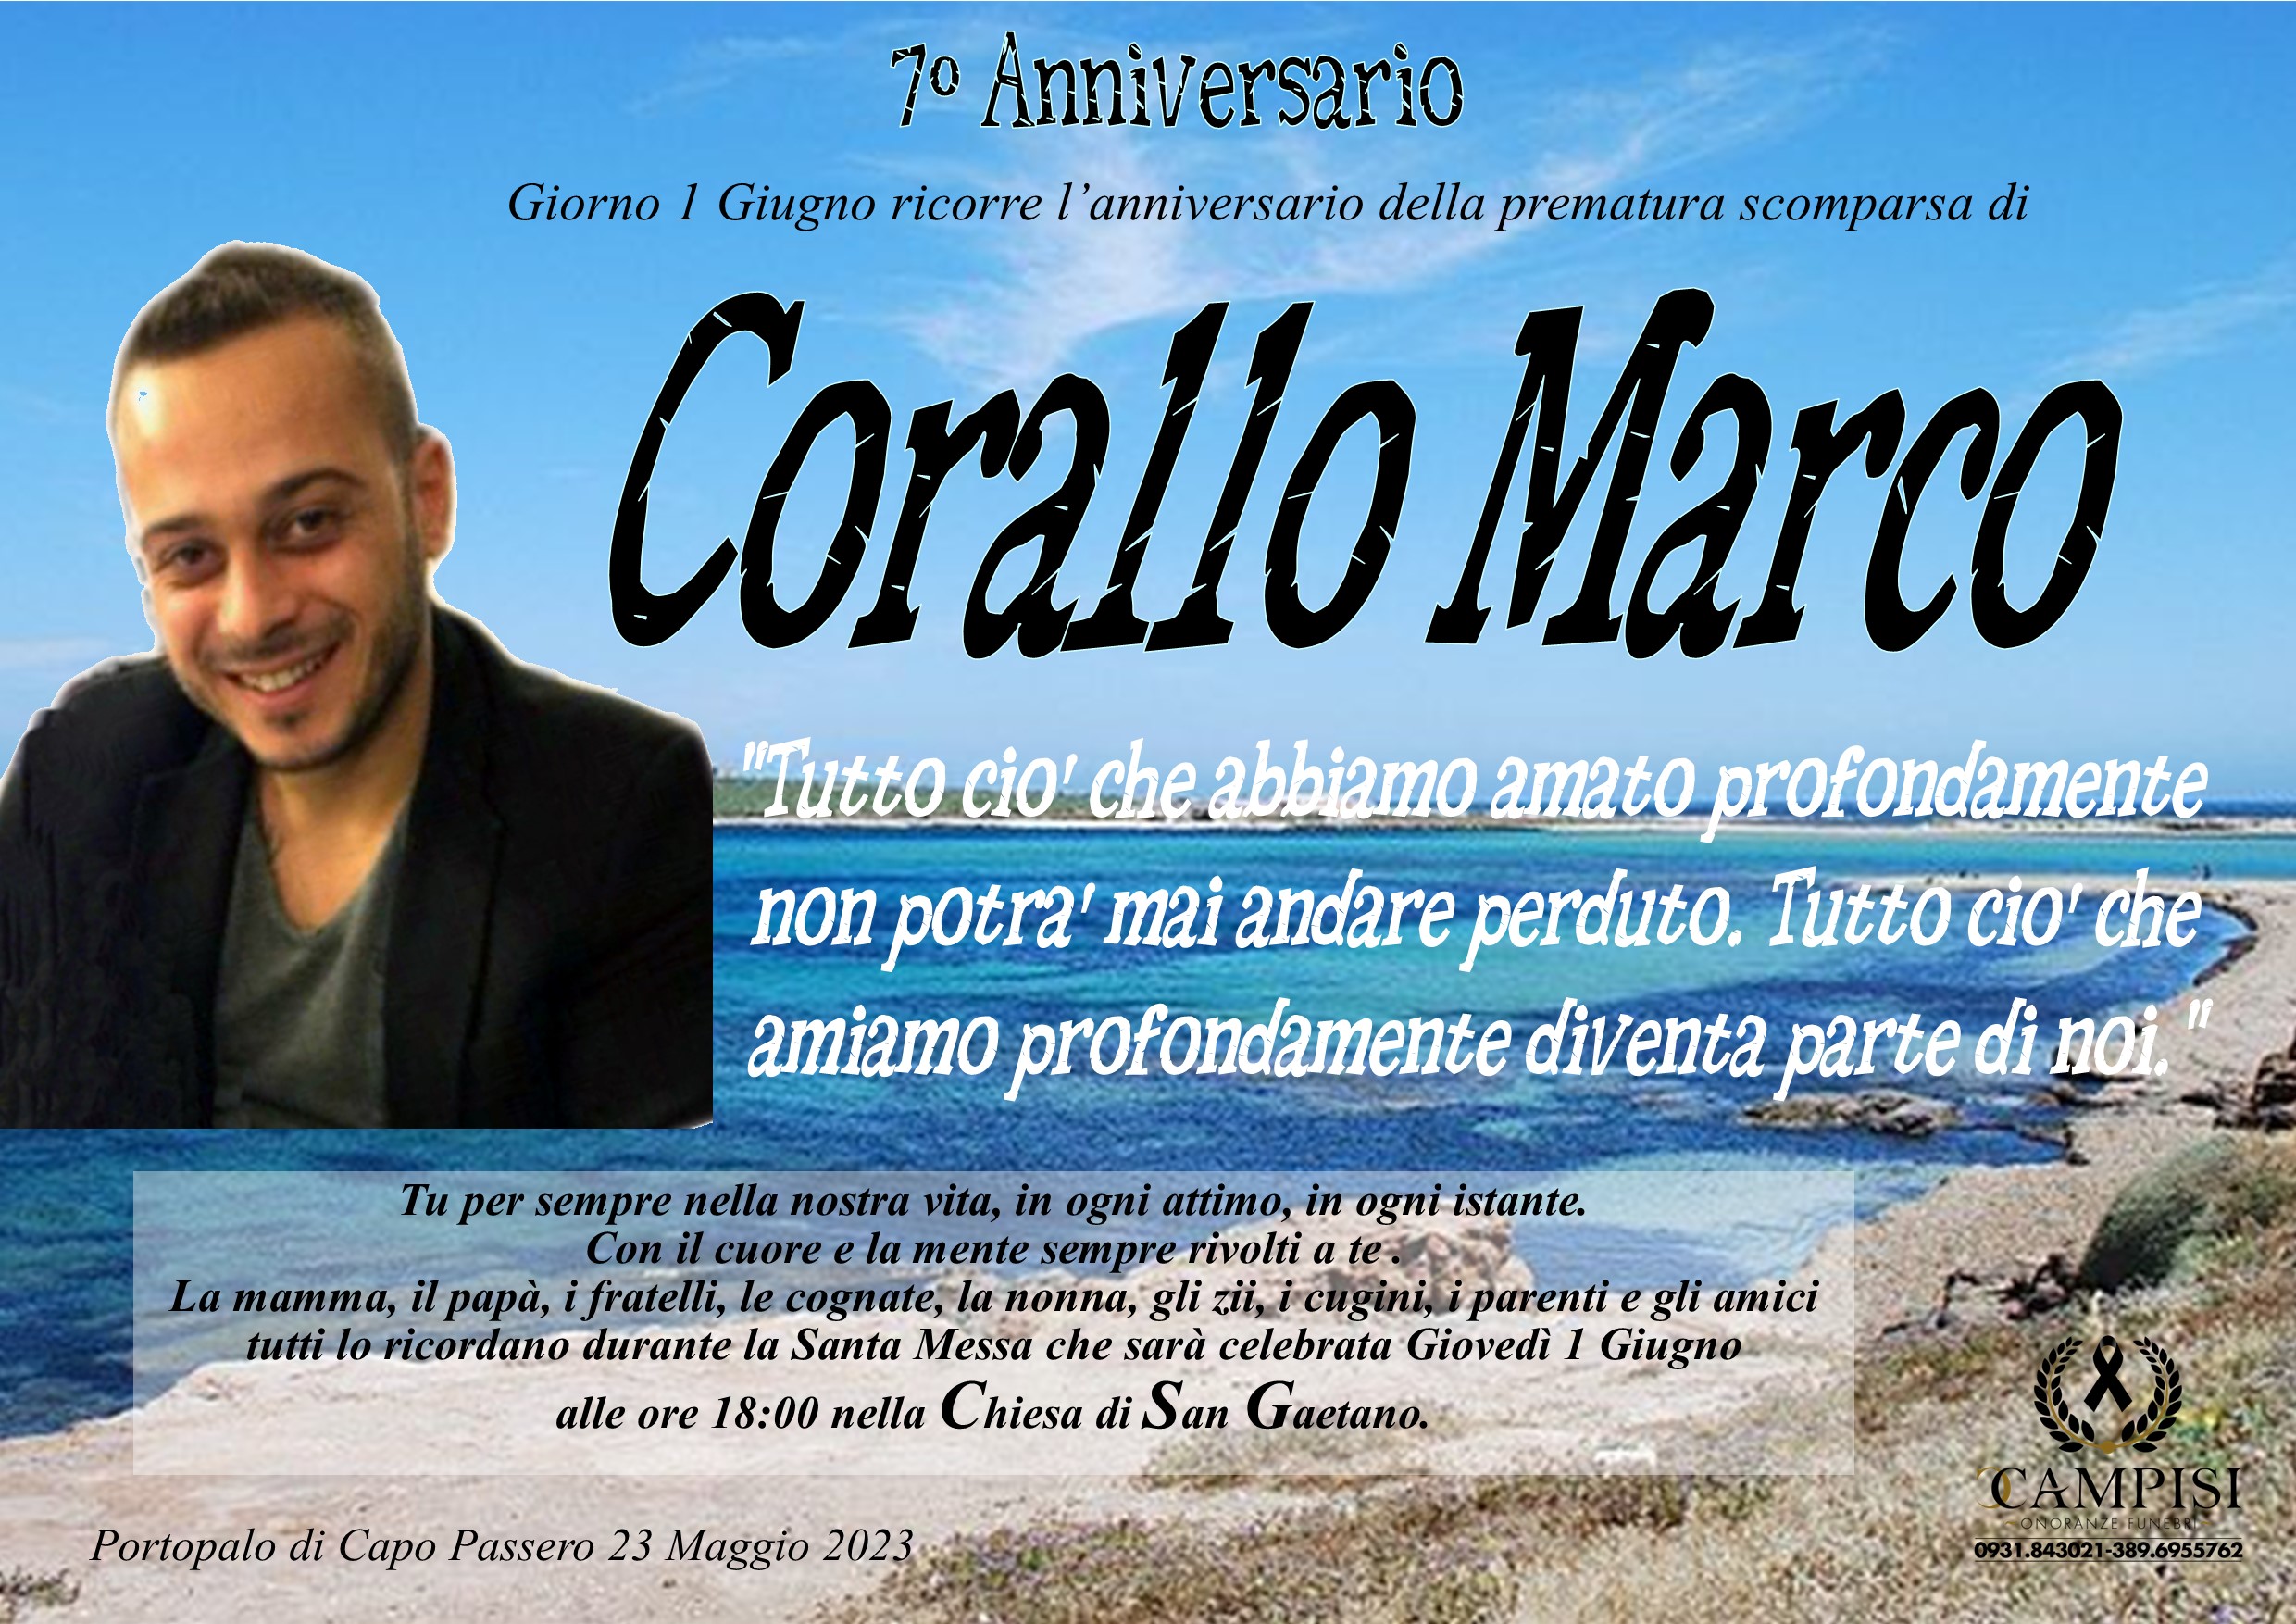 Marco Corallo